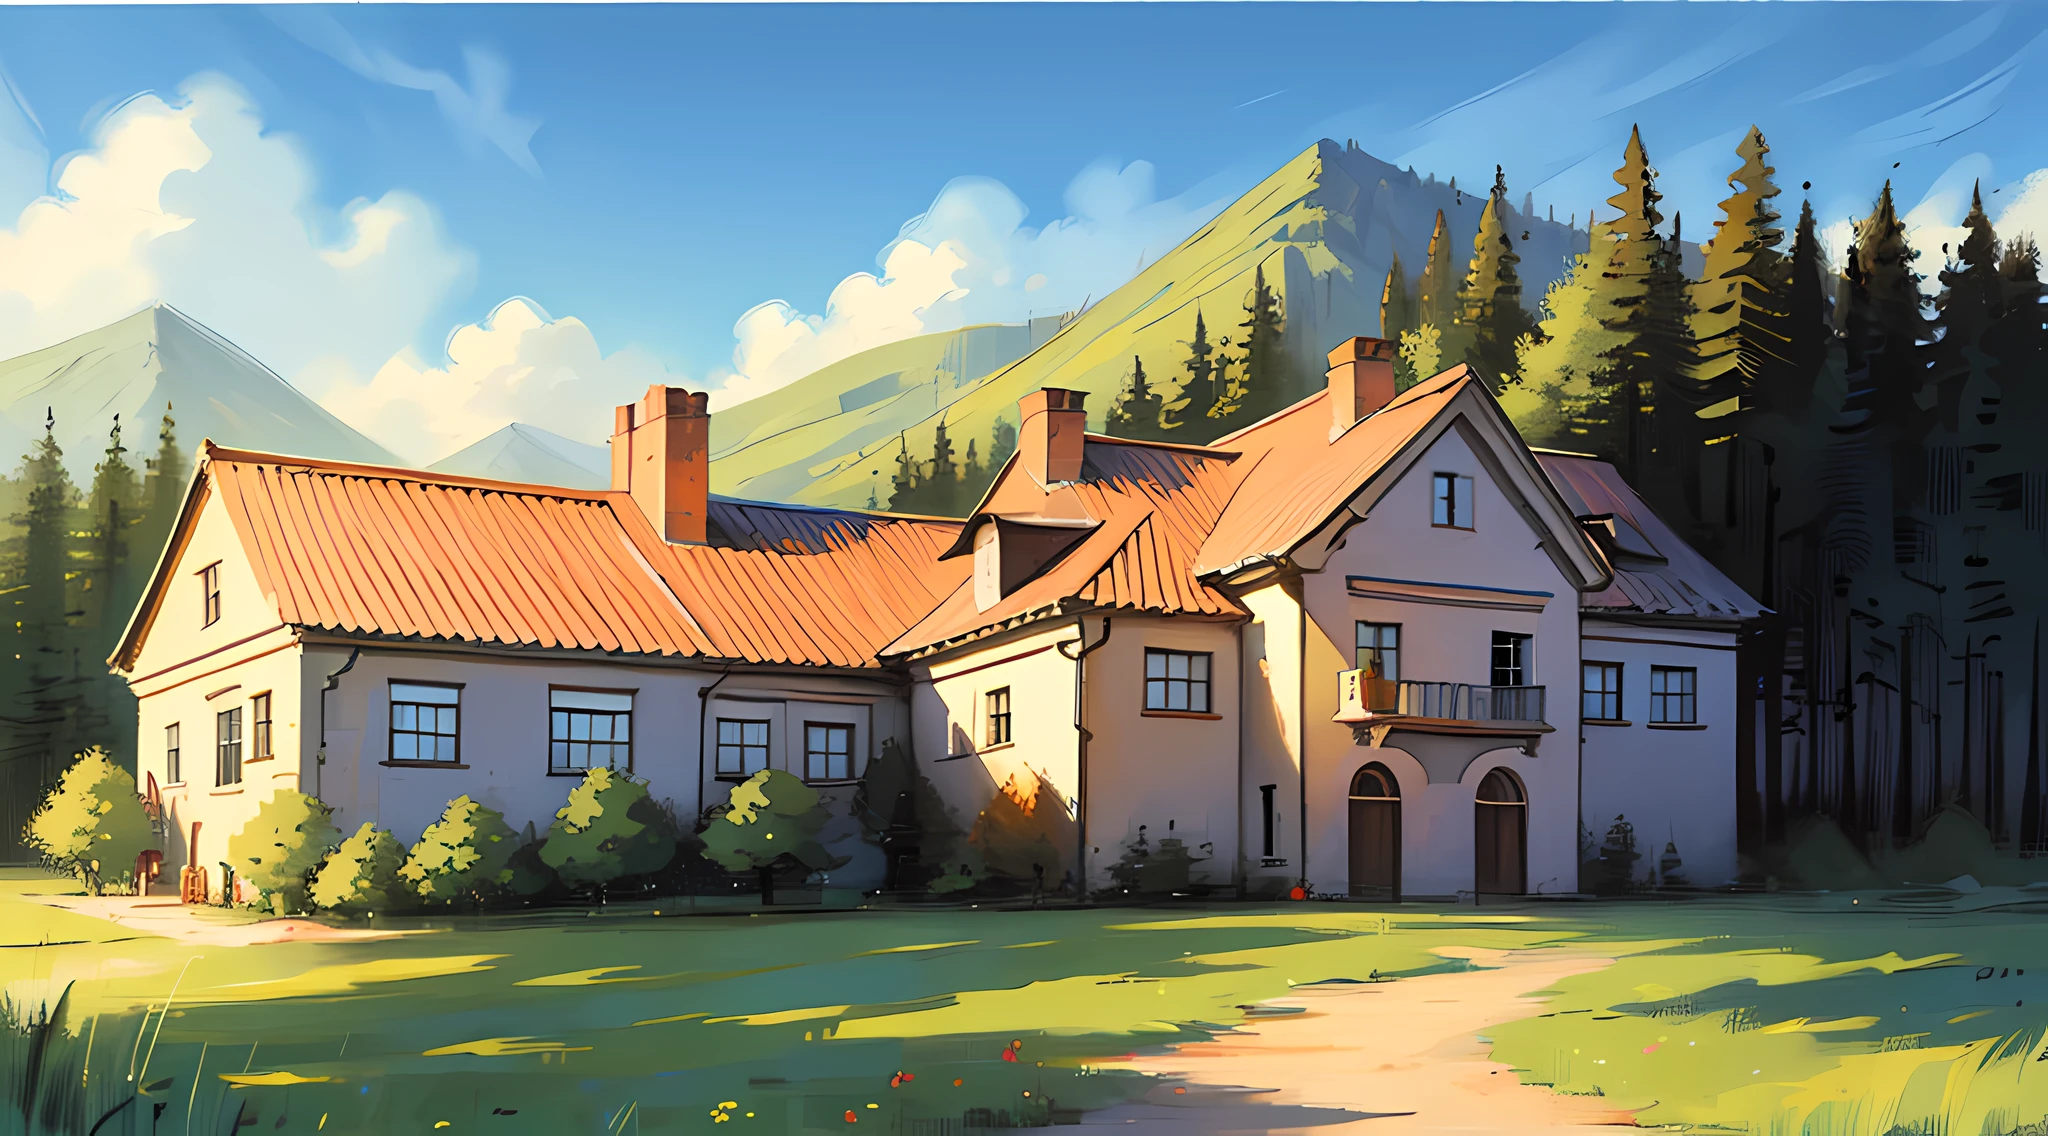 منزل ريفي في الجبال， الفن الكلاسيكي， رسمت بالزيت